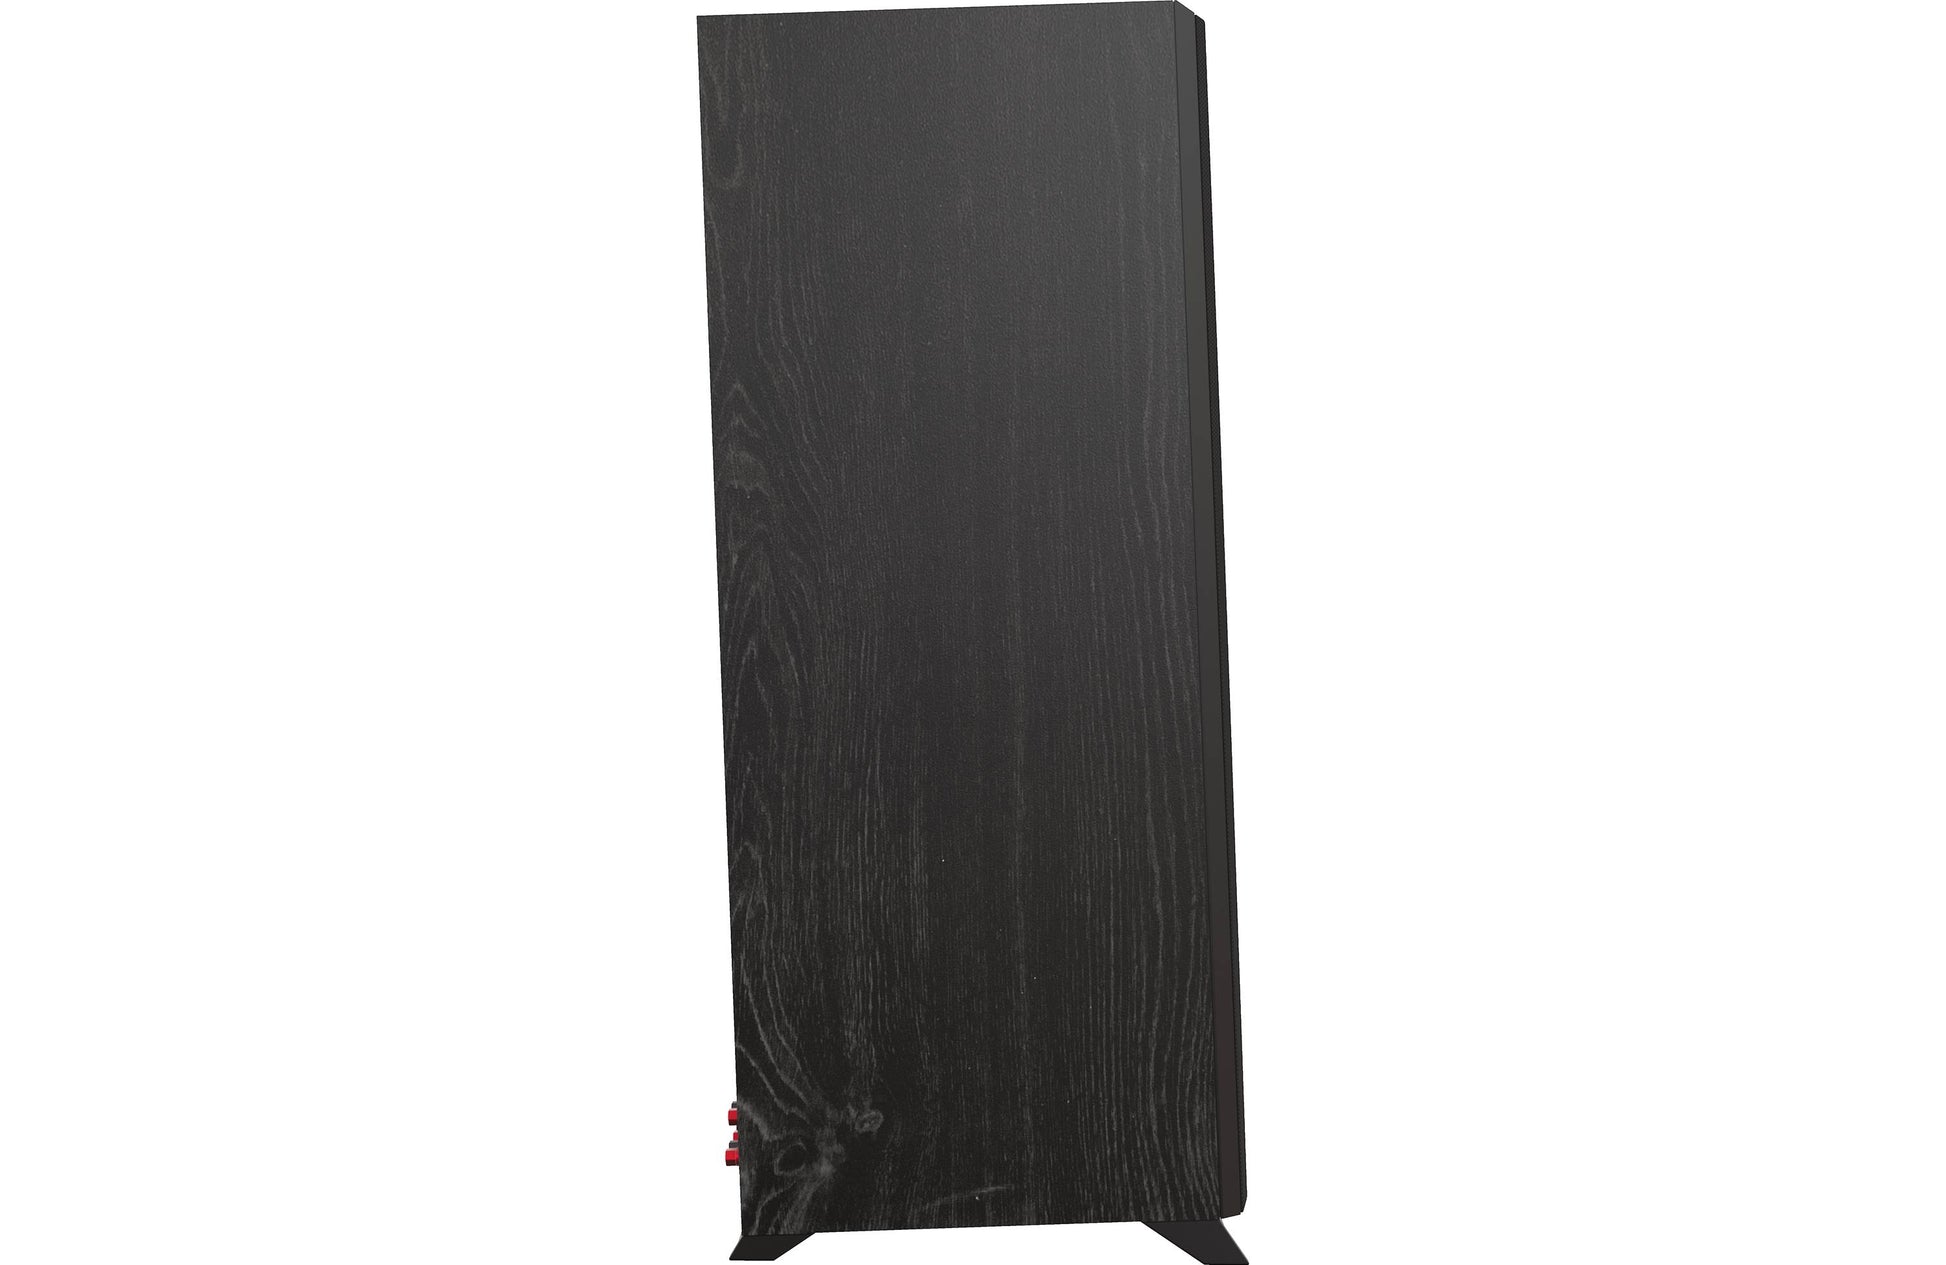 Klipsch RP-6000F II Floor Standing Speaker